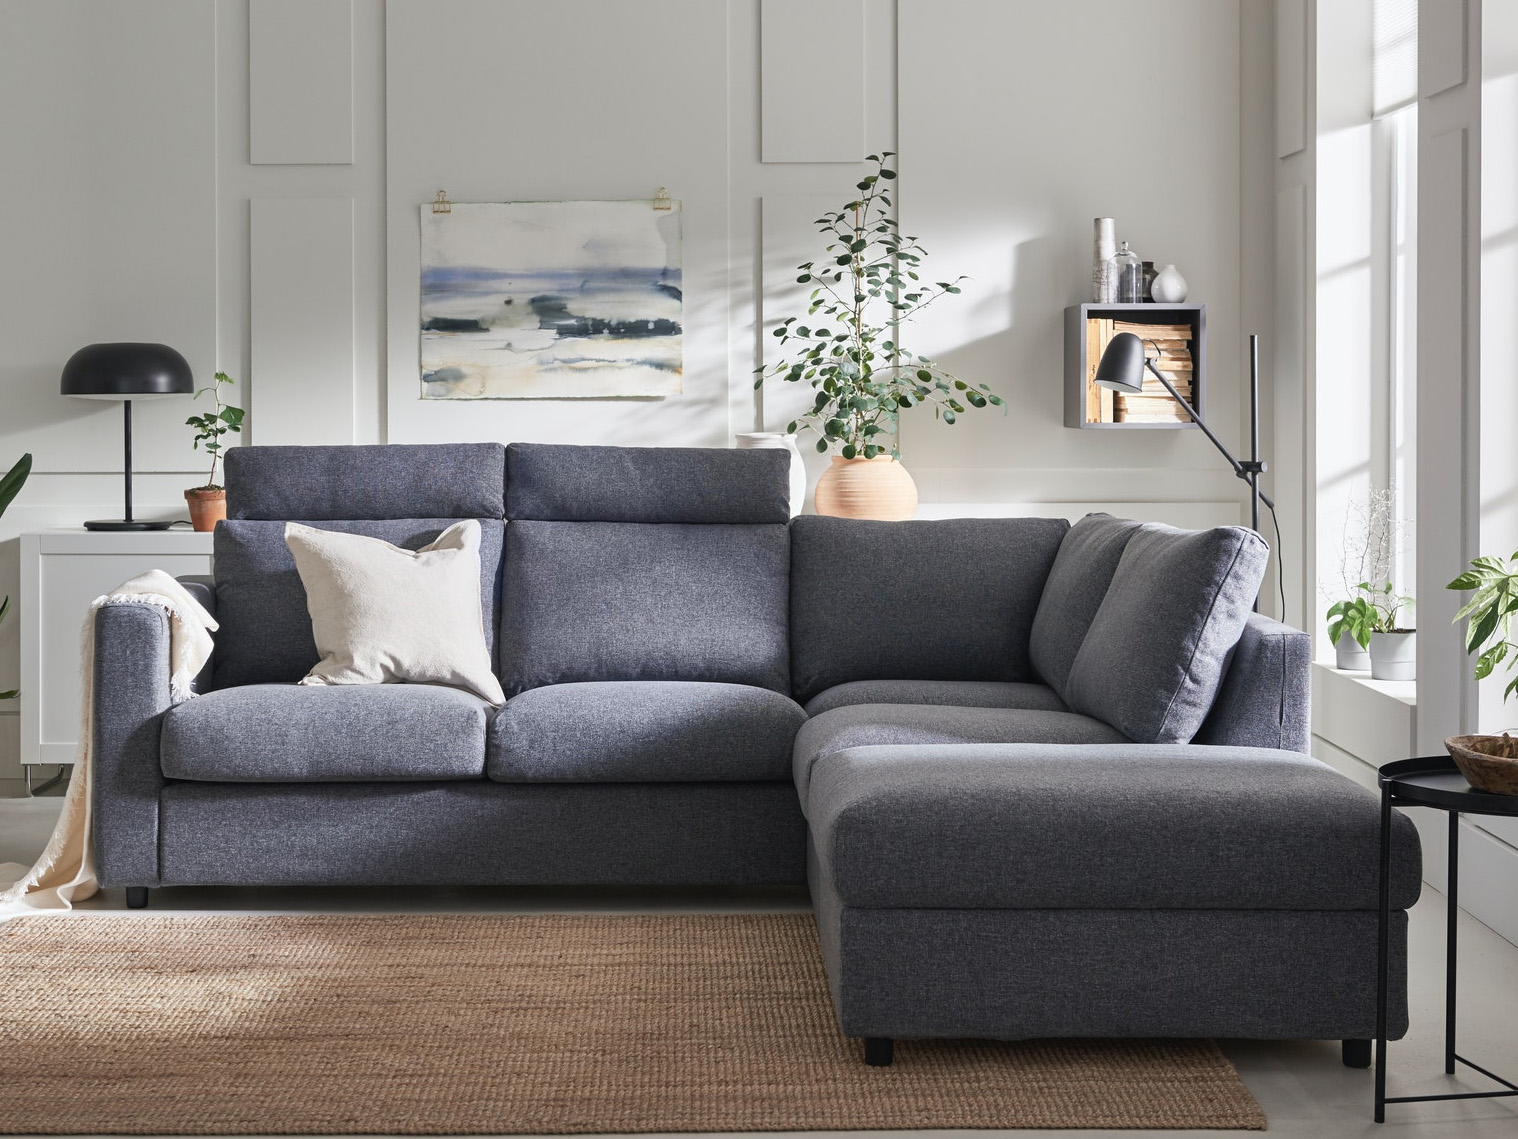 Sofas │ IKEA - Sofa designed for comfort